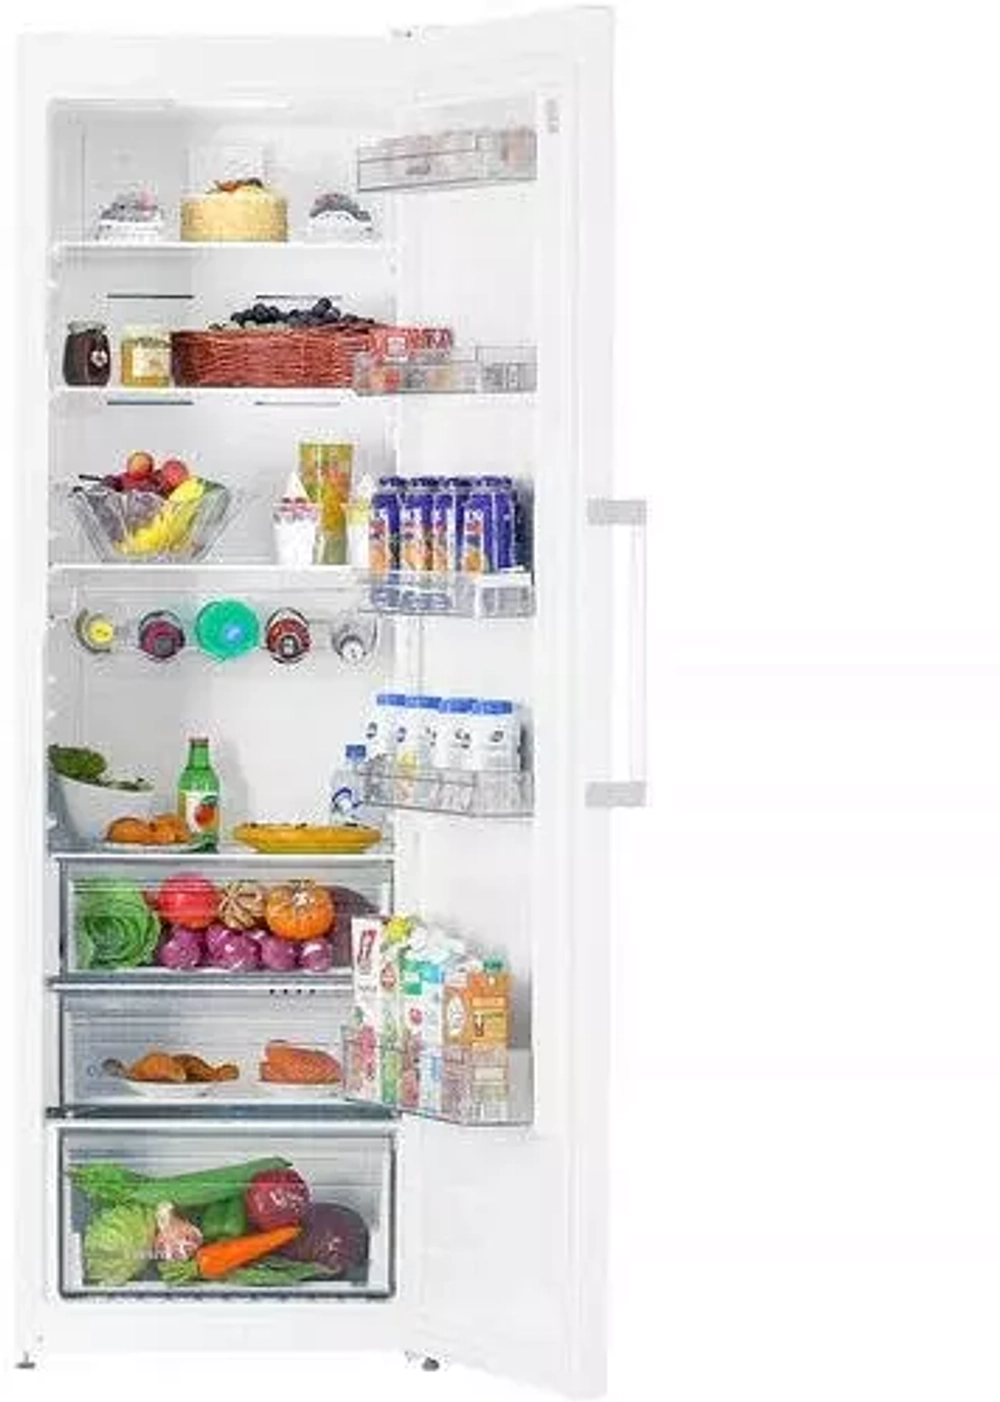 Холодильник однодверный Scandilux R711EZ12 X